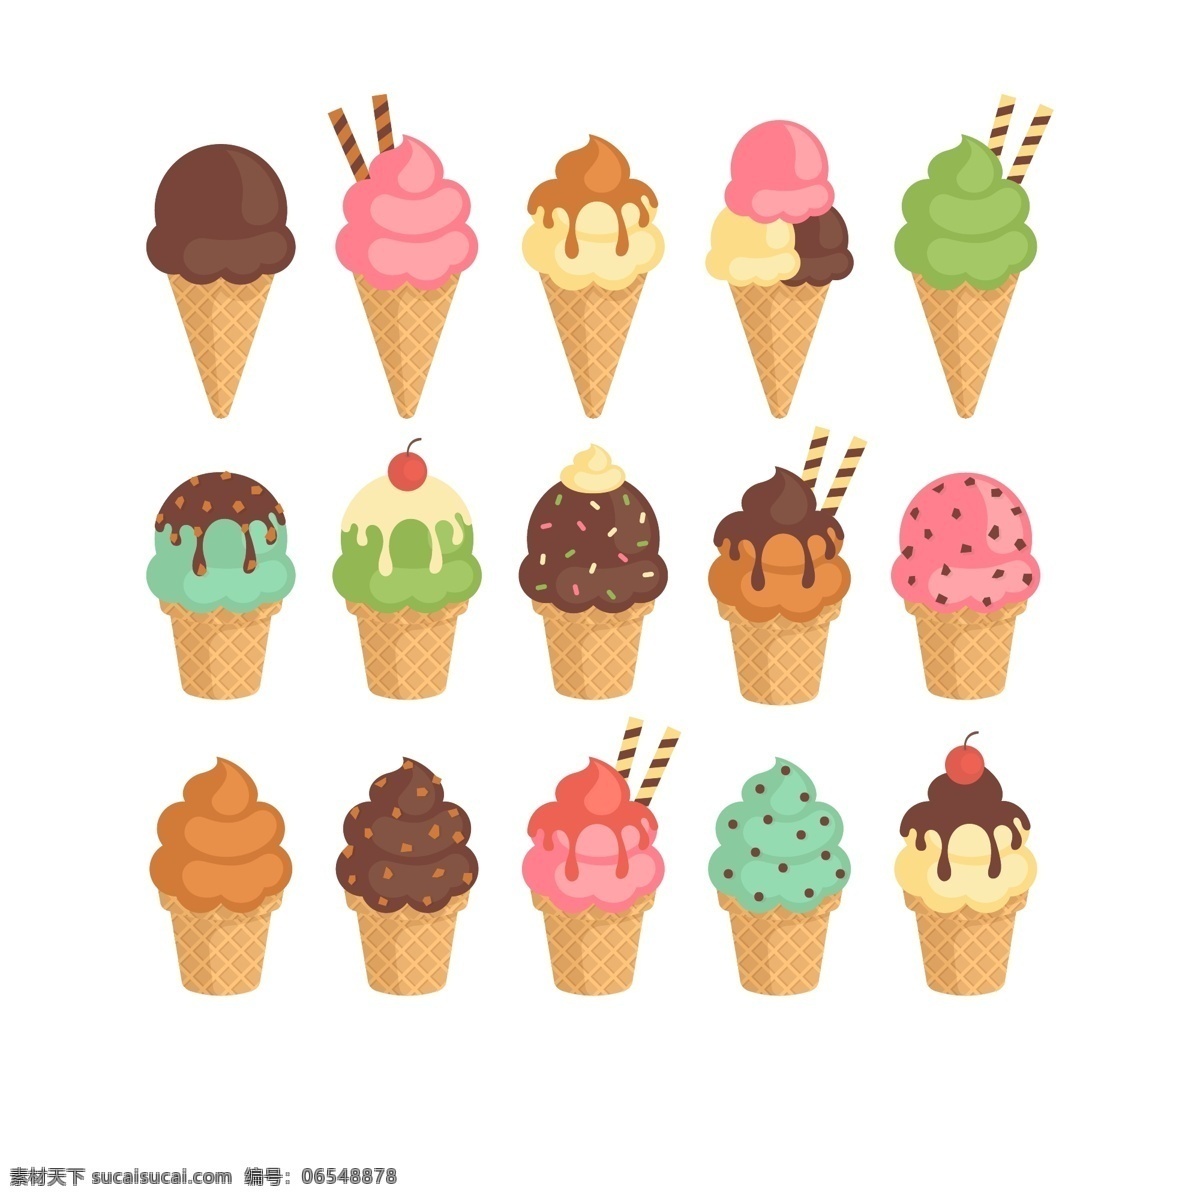 卡通 彩色 融化 冰淇淋 甜筒 融化冰淇淋 雪糕 巧克力冰淇淋 水果冰淇淋 抹茶冰淇淋 冰淇淋元素